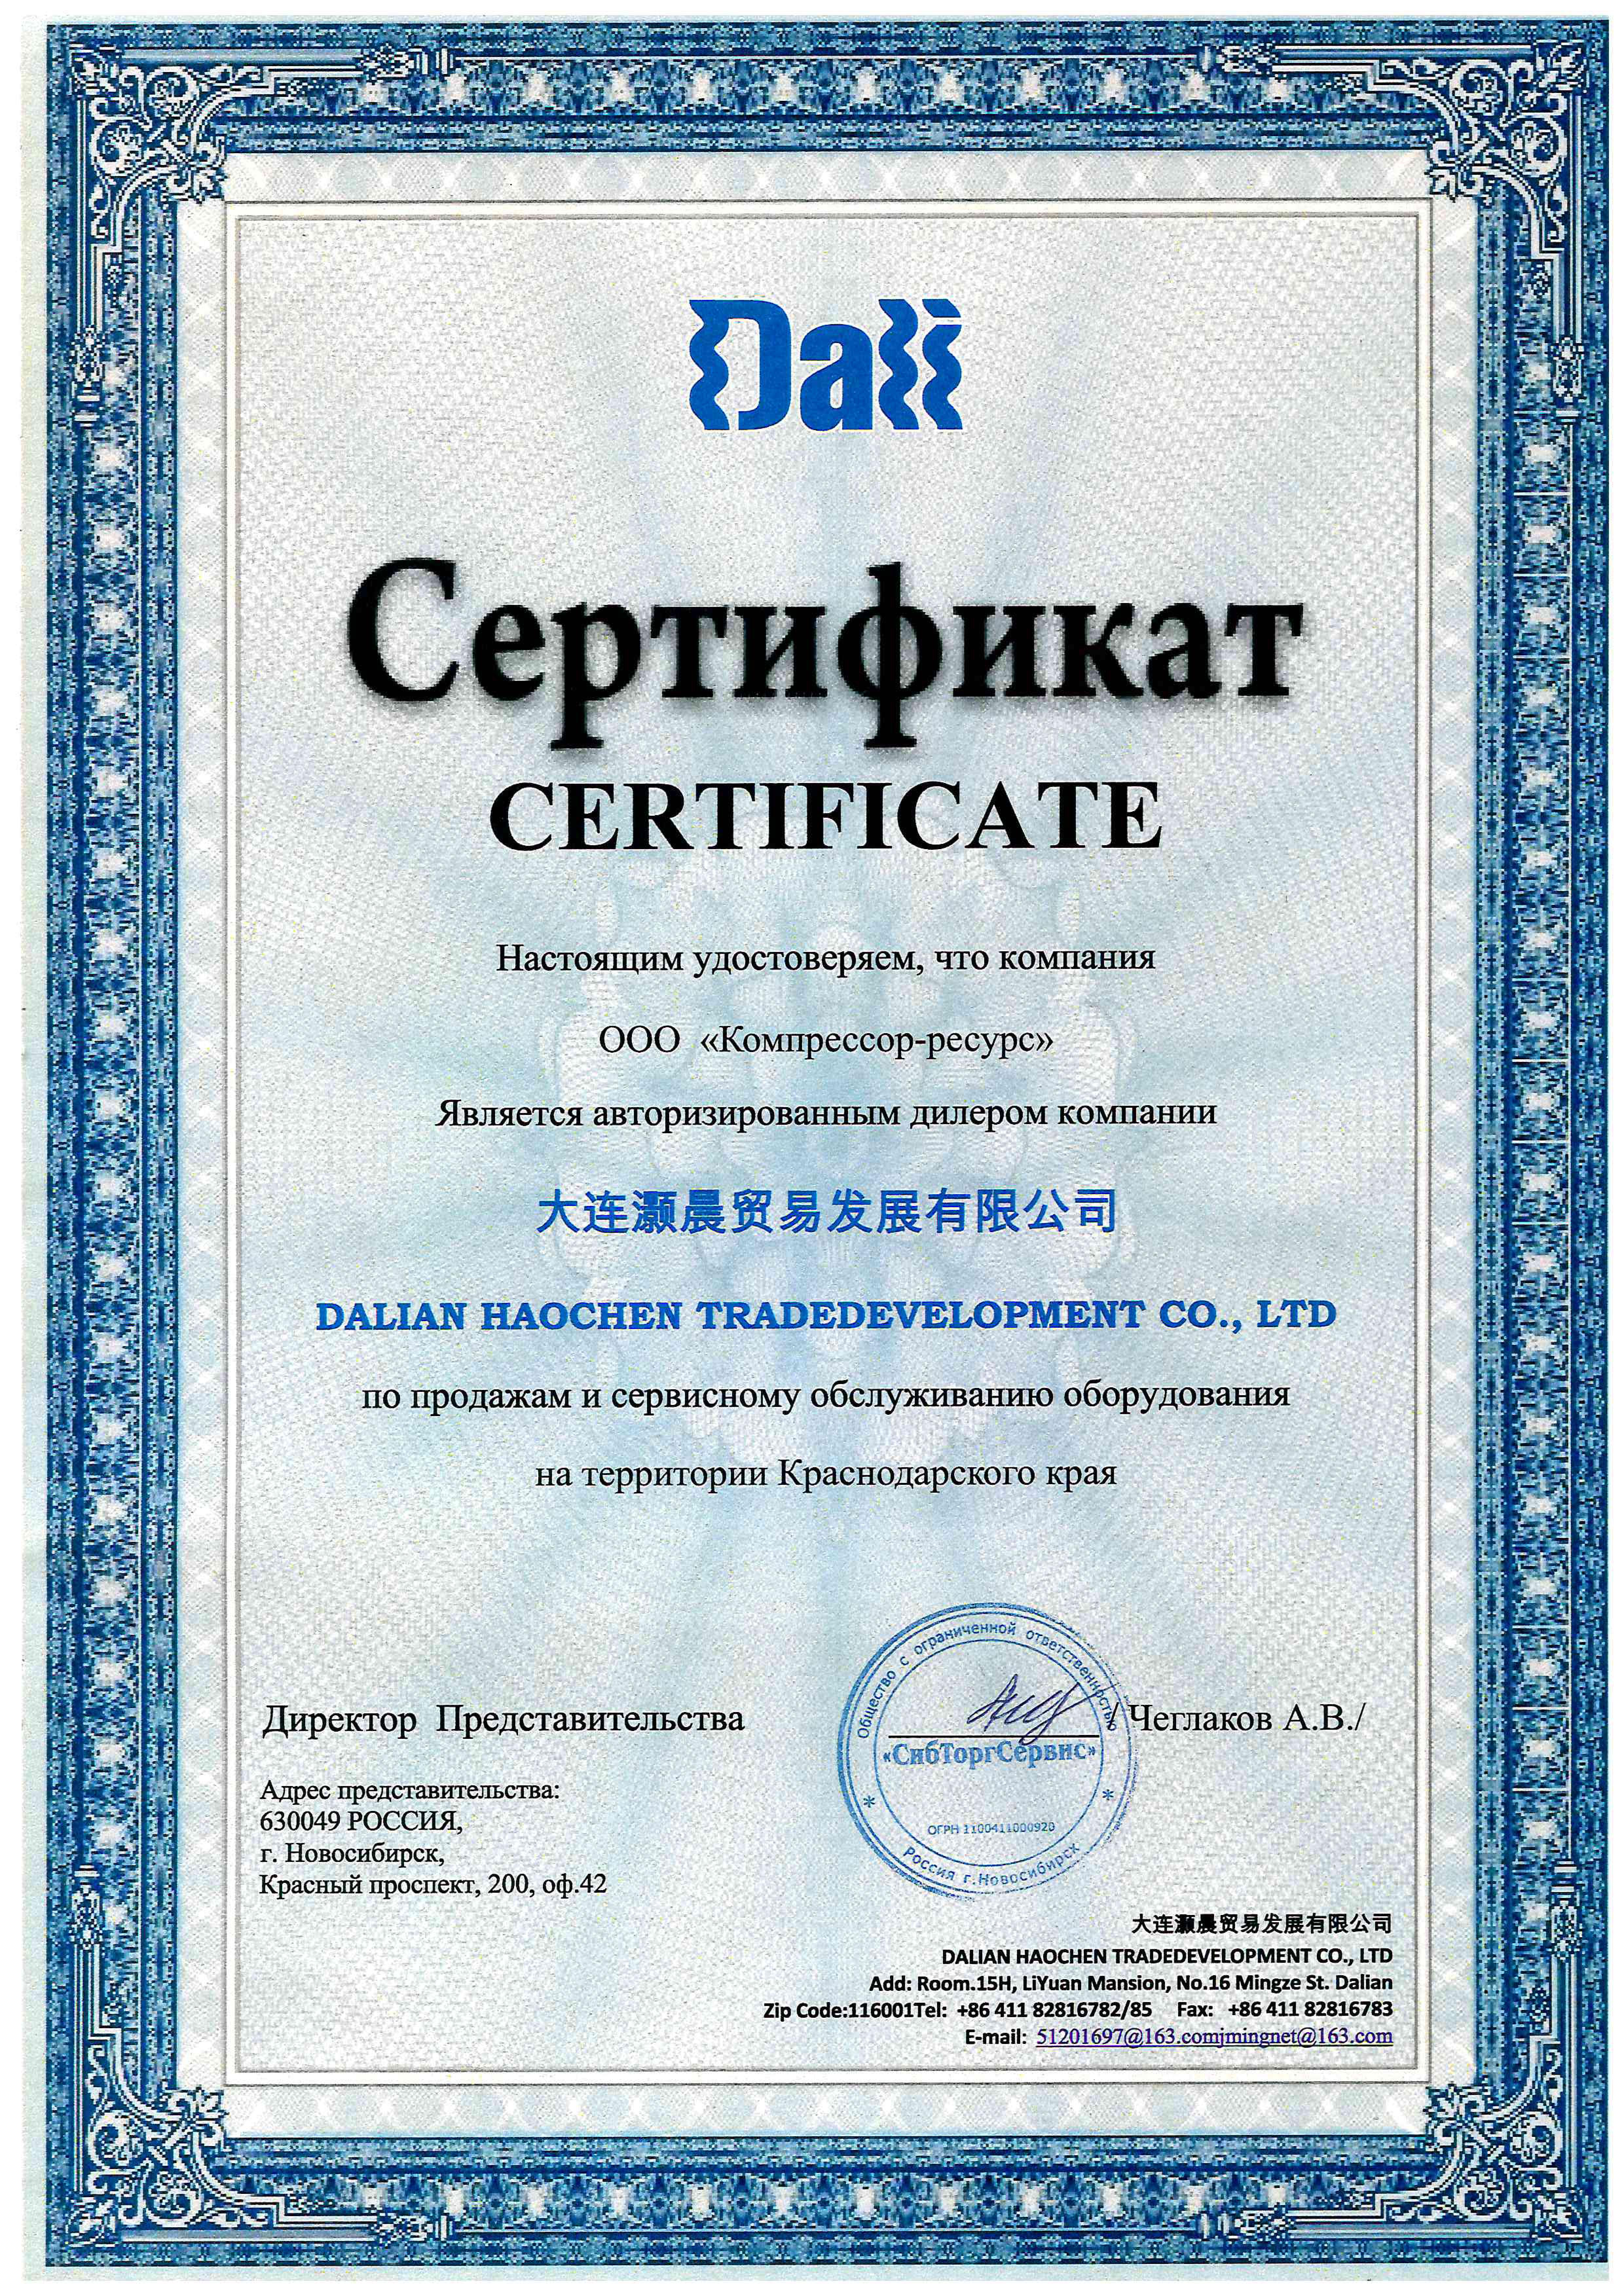 ООО "Компрессор-ресурс" является авторизованный сервисный центр по марке DALI